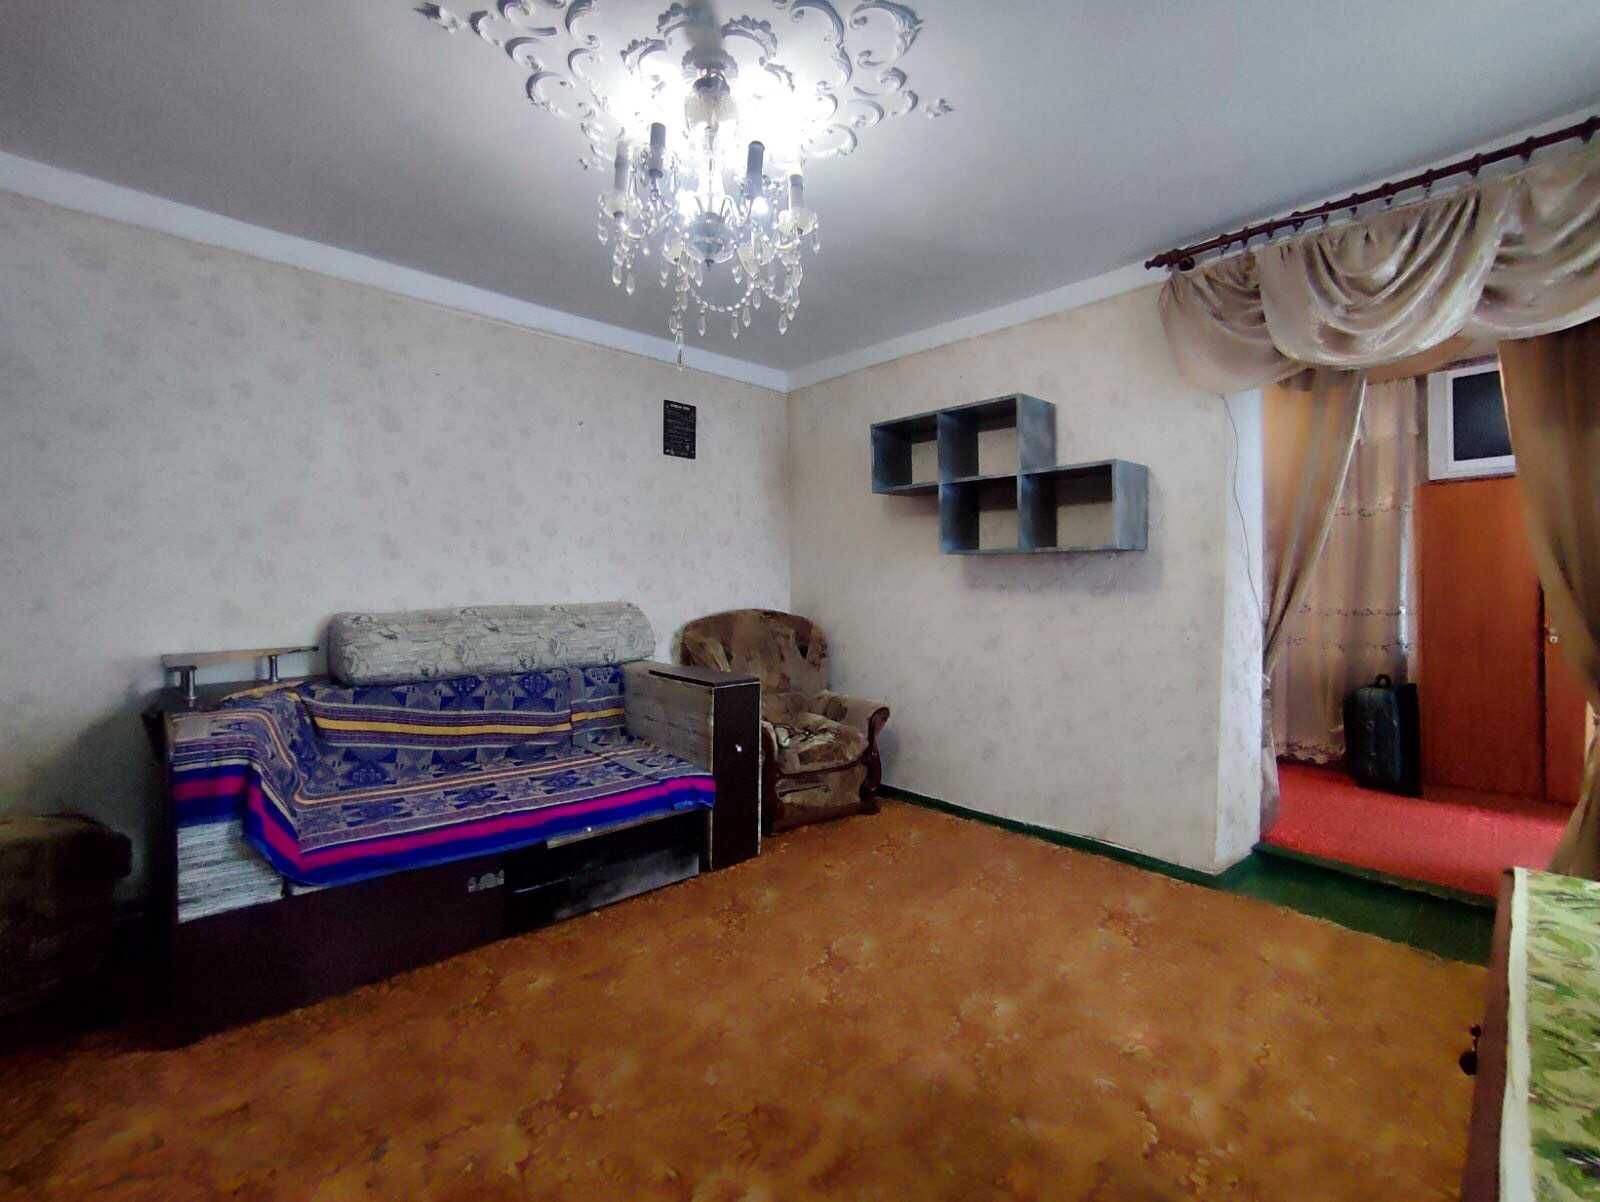 2-комнатная квартира в центре Одессы